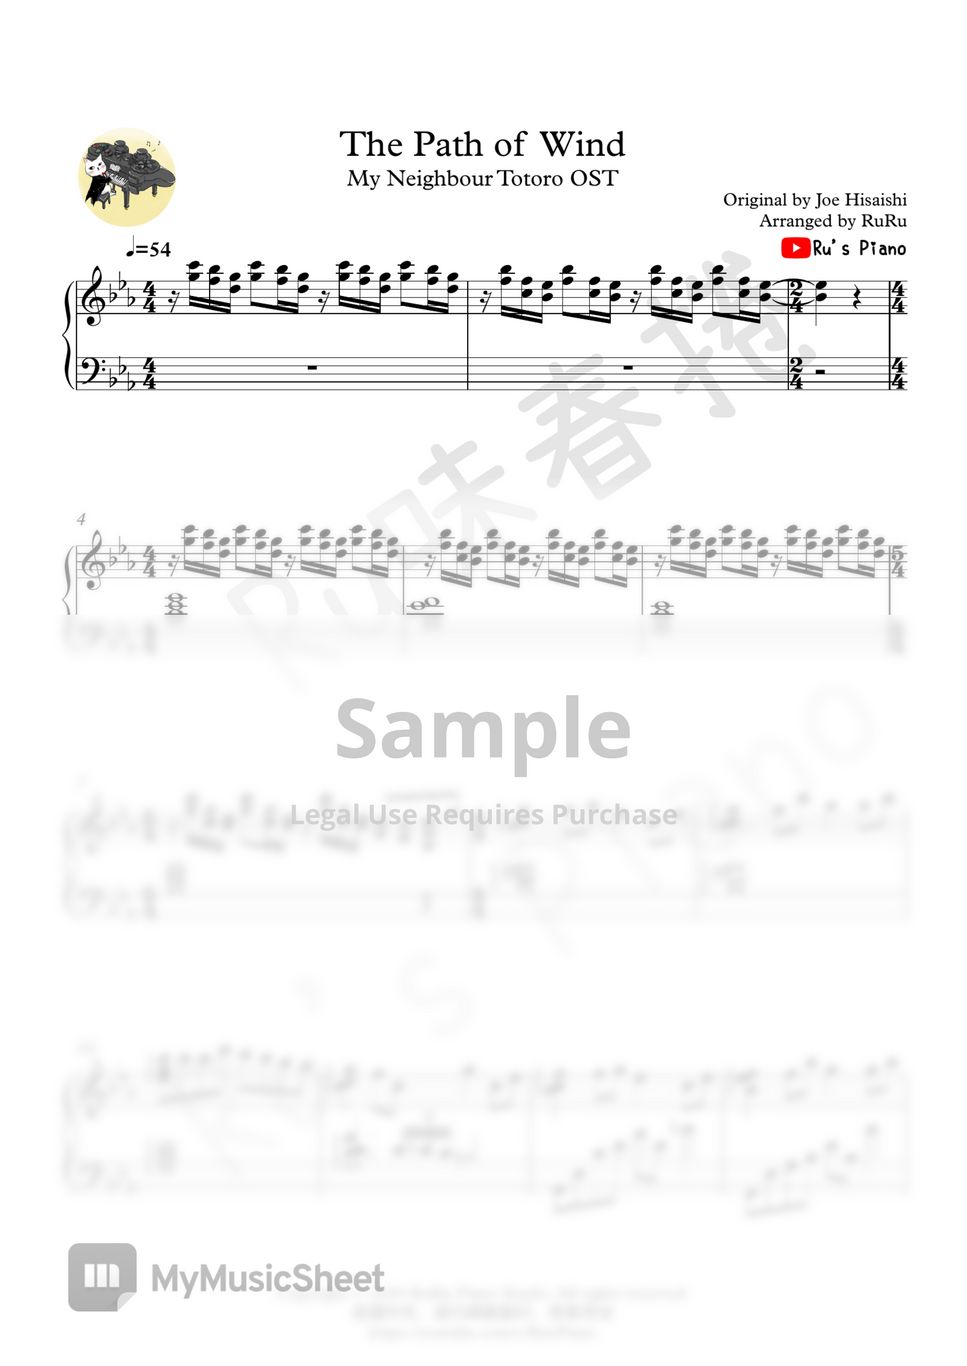 久石譲 - My Neighbour Totoro - The Path of Wind - (風のとおり道) by Ru's Piano